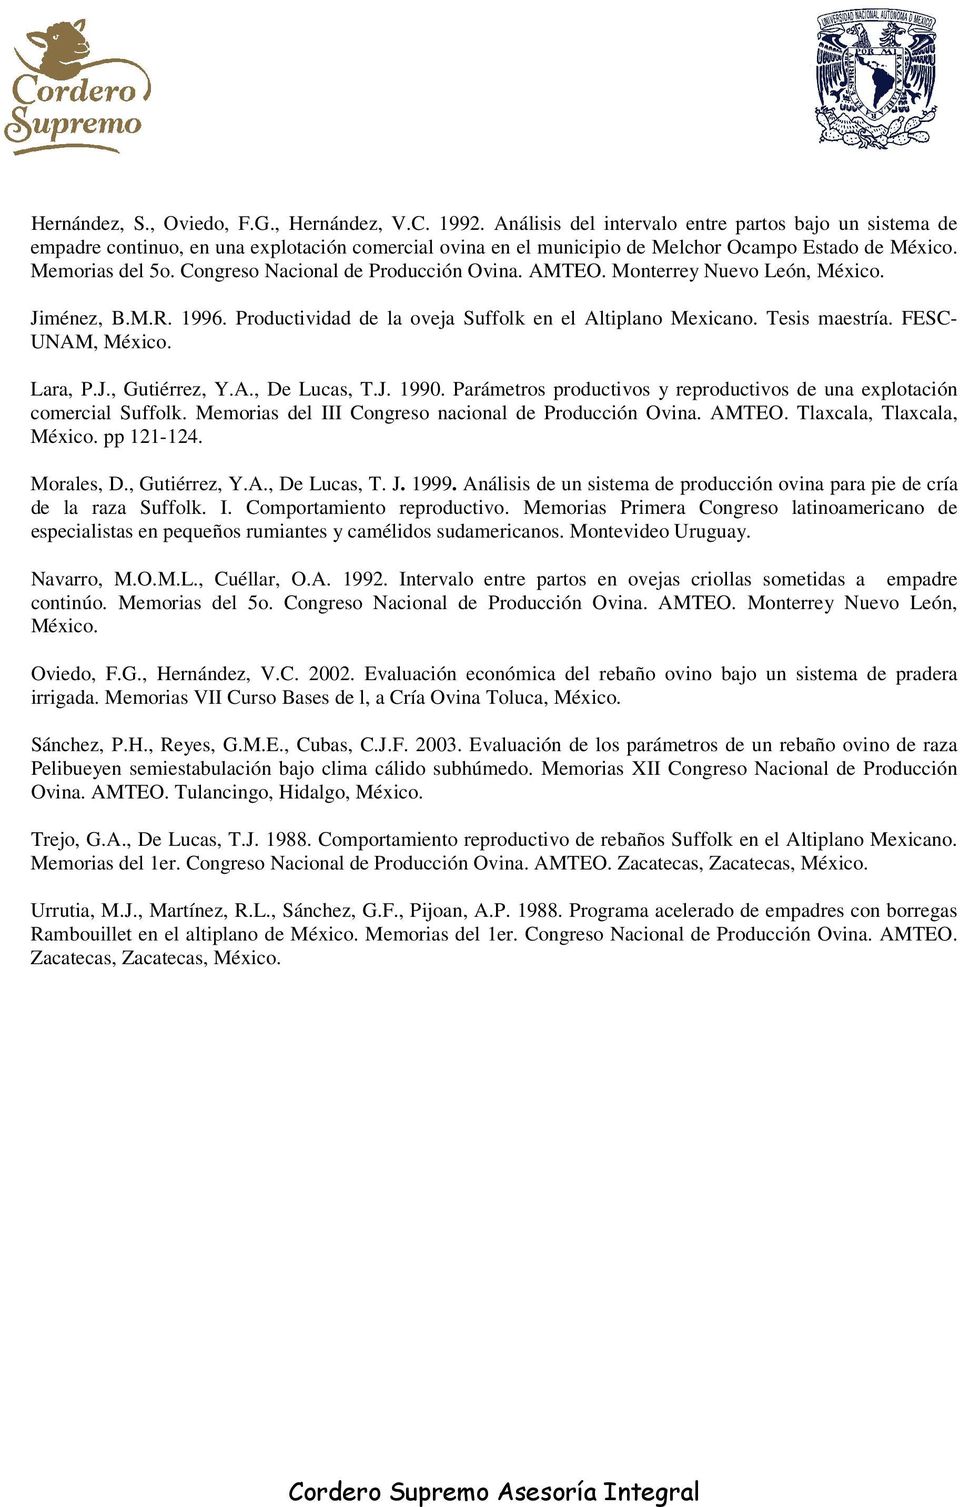 Congreso Nacional de Producción Ovina. AMTEO. Monterrey Nuevo León, Jiménez, B.M.R. 1996. Productividad de la oveja Suffolk en el Altiplano Mexicano. Tesis maestría. FESC- UNAM, Lara, P.J., Gutiérrez, Y.